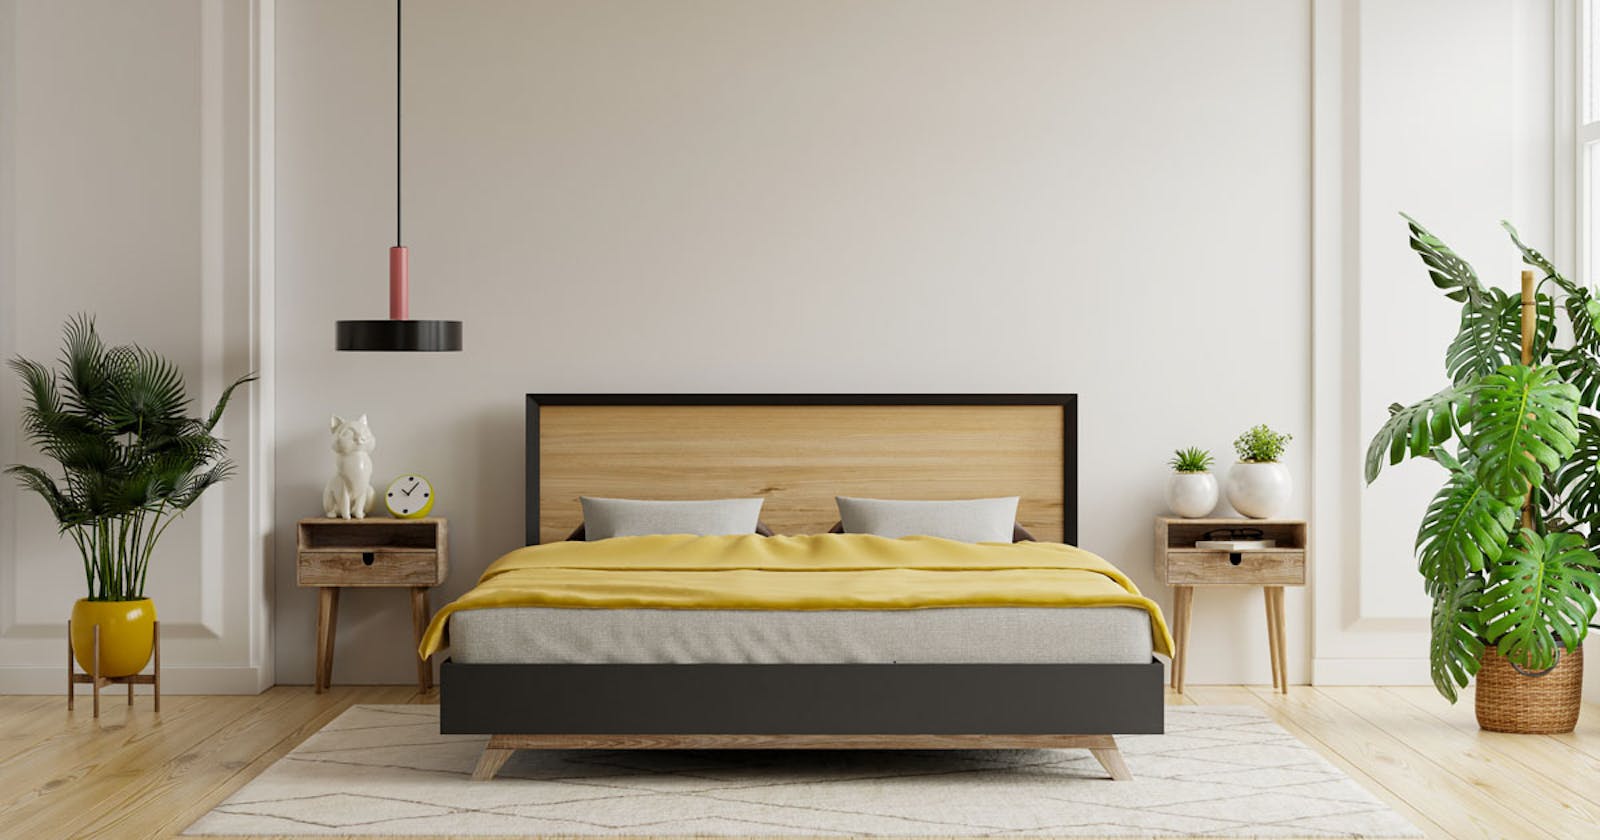 Matratze 120x200: Die perfekte Bettgröße für erholsamen Schlaf